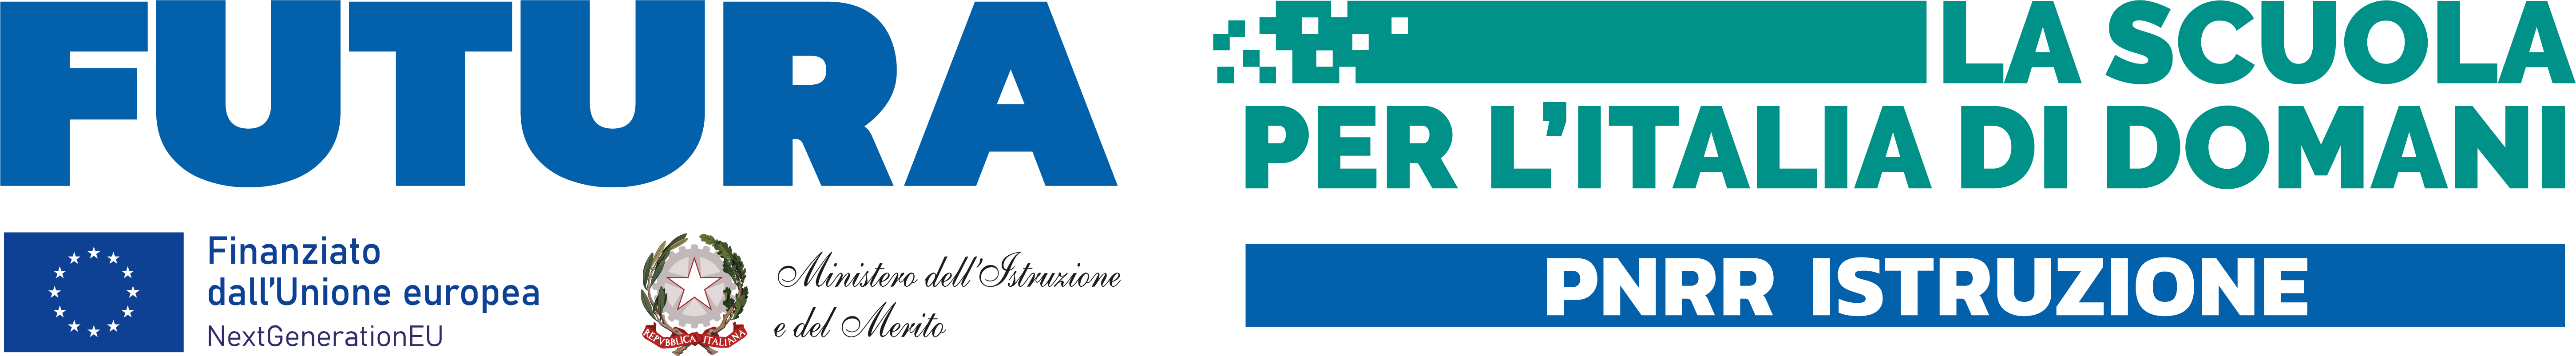 Logo FUTURA PNRR